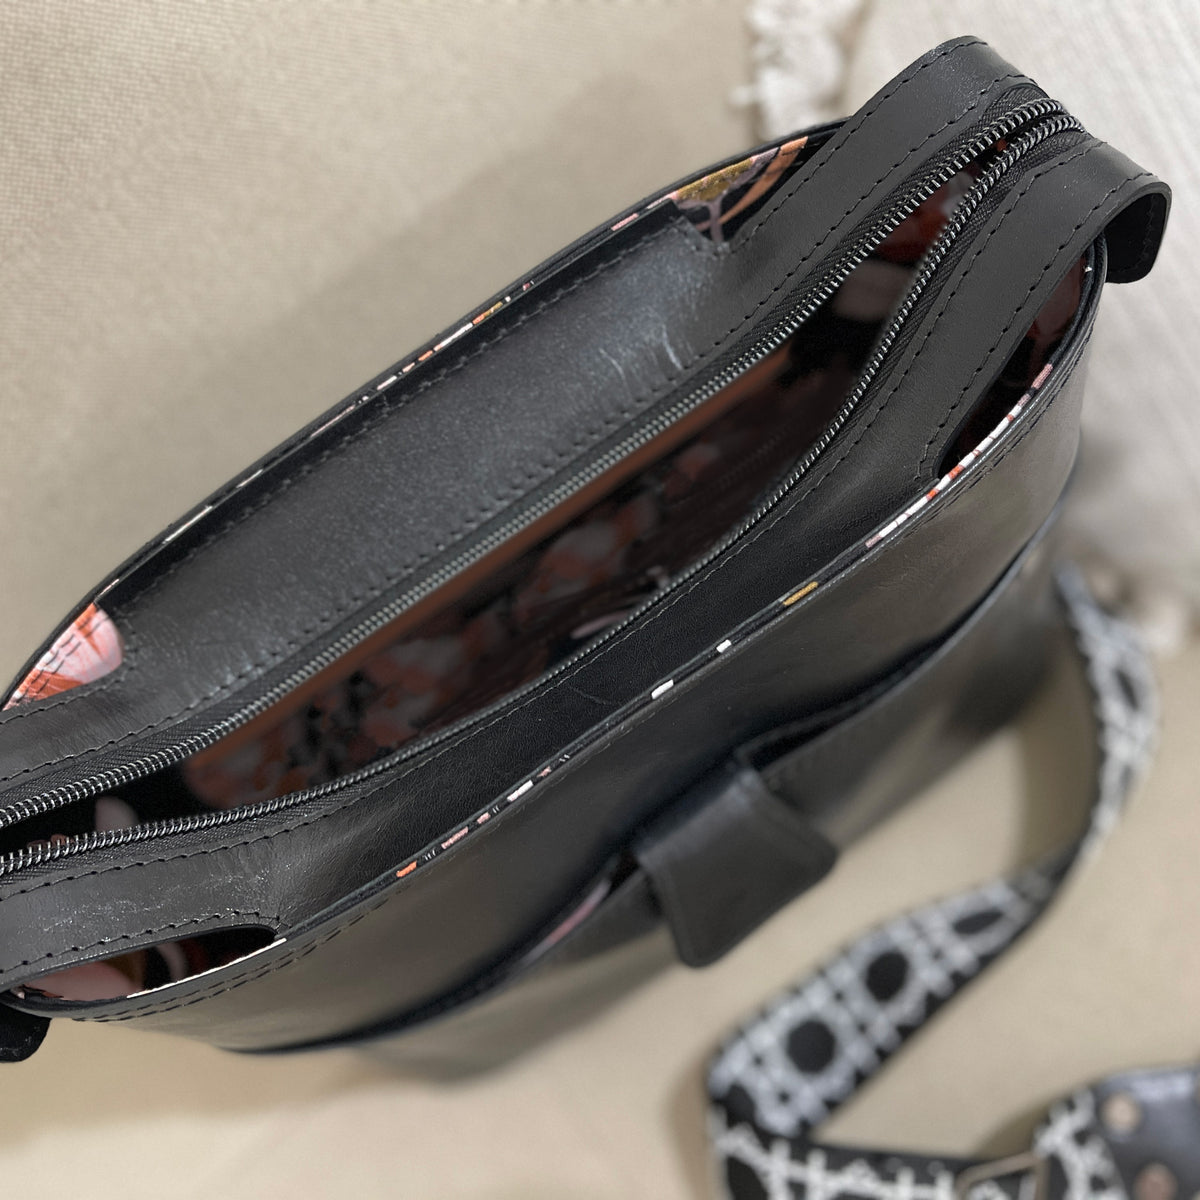 The SWIFT Handbag – Lockwood & Webb Designs